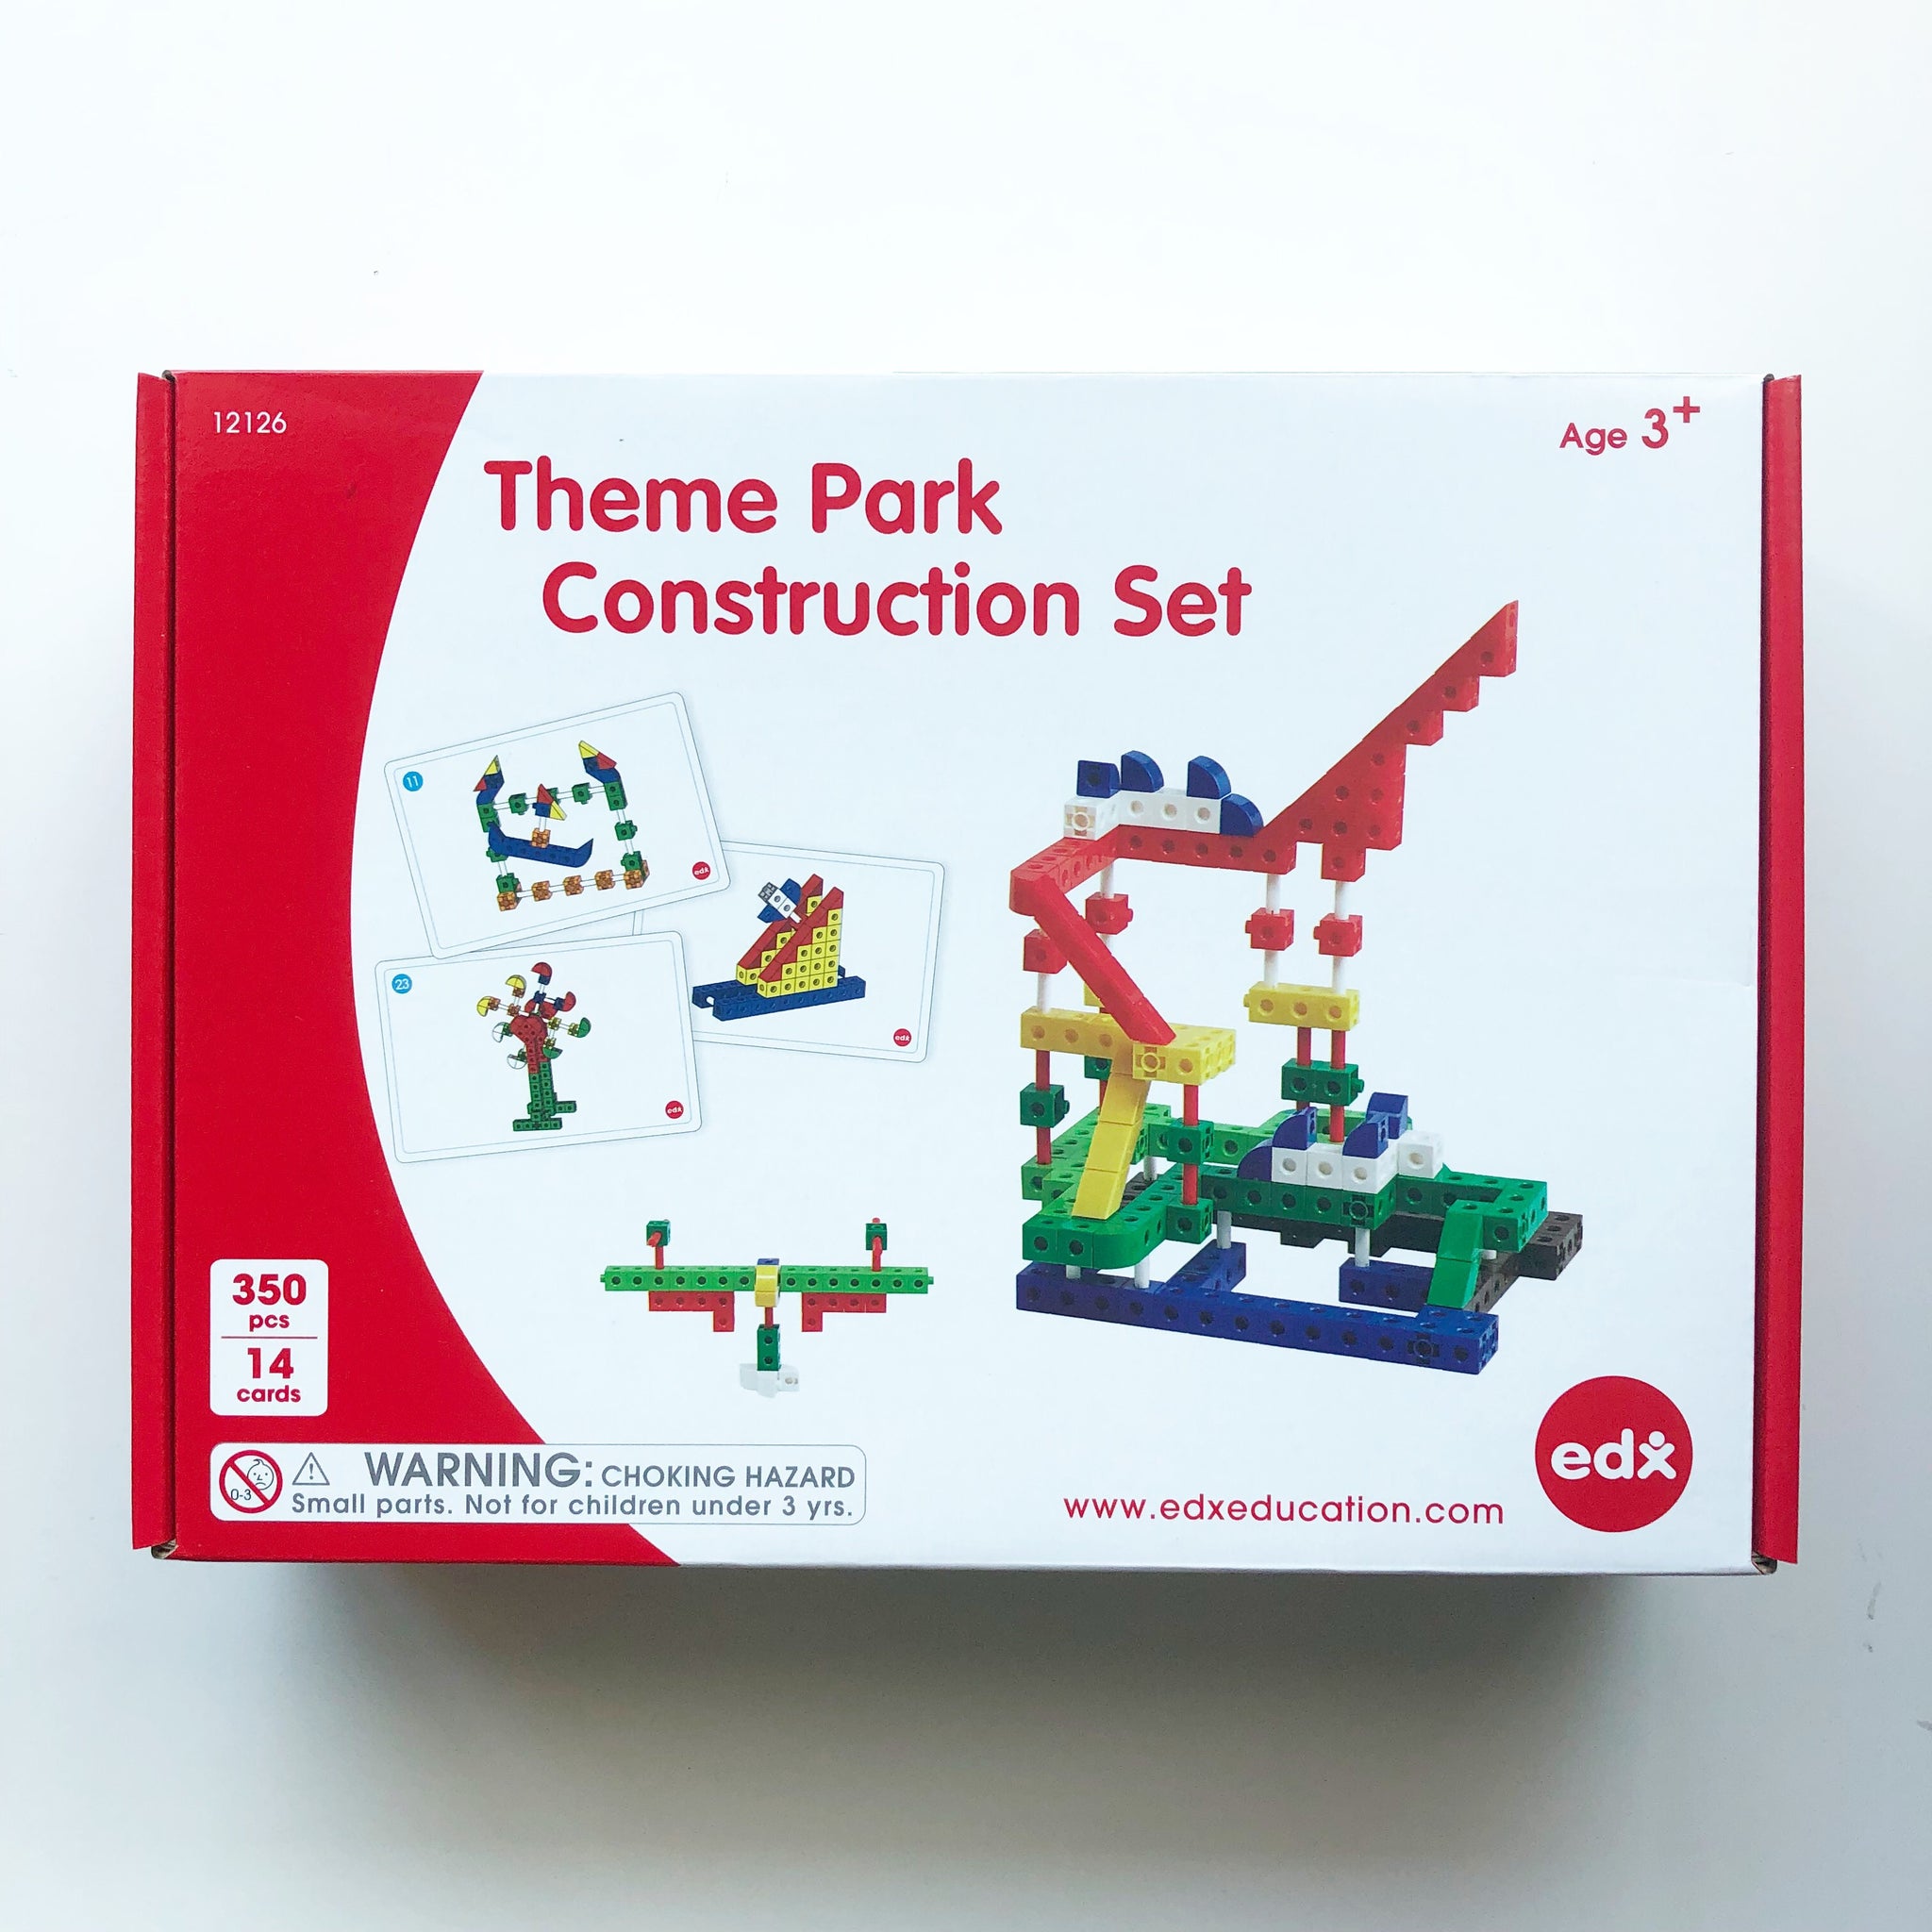 Theme Park Construction Set